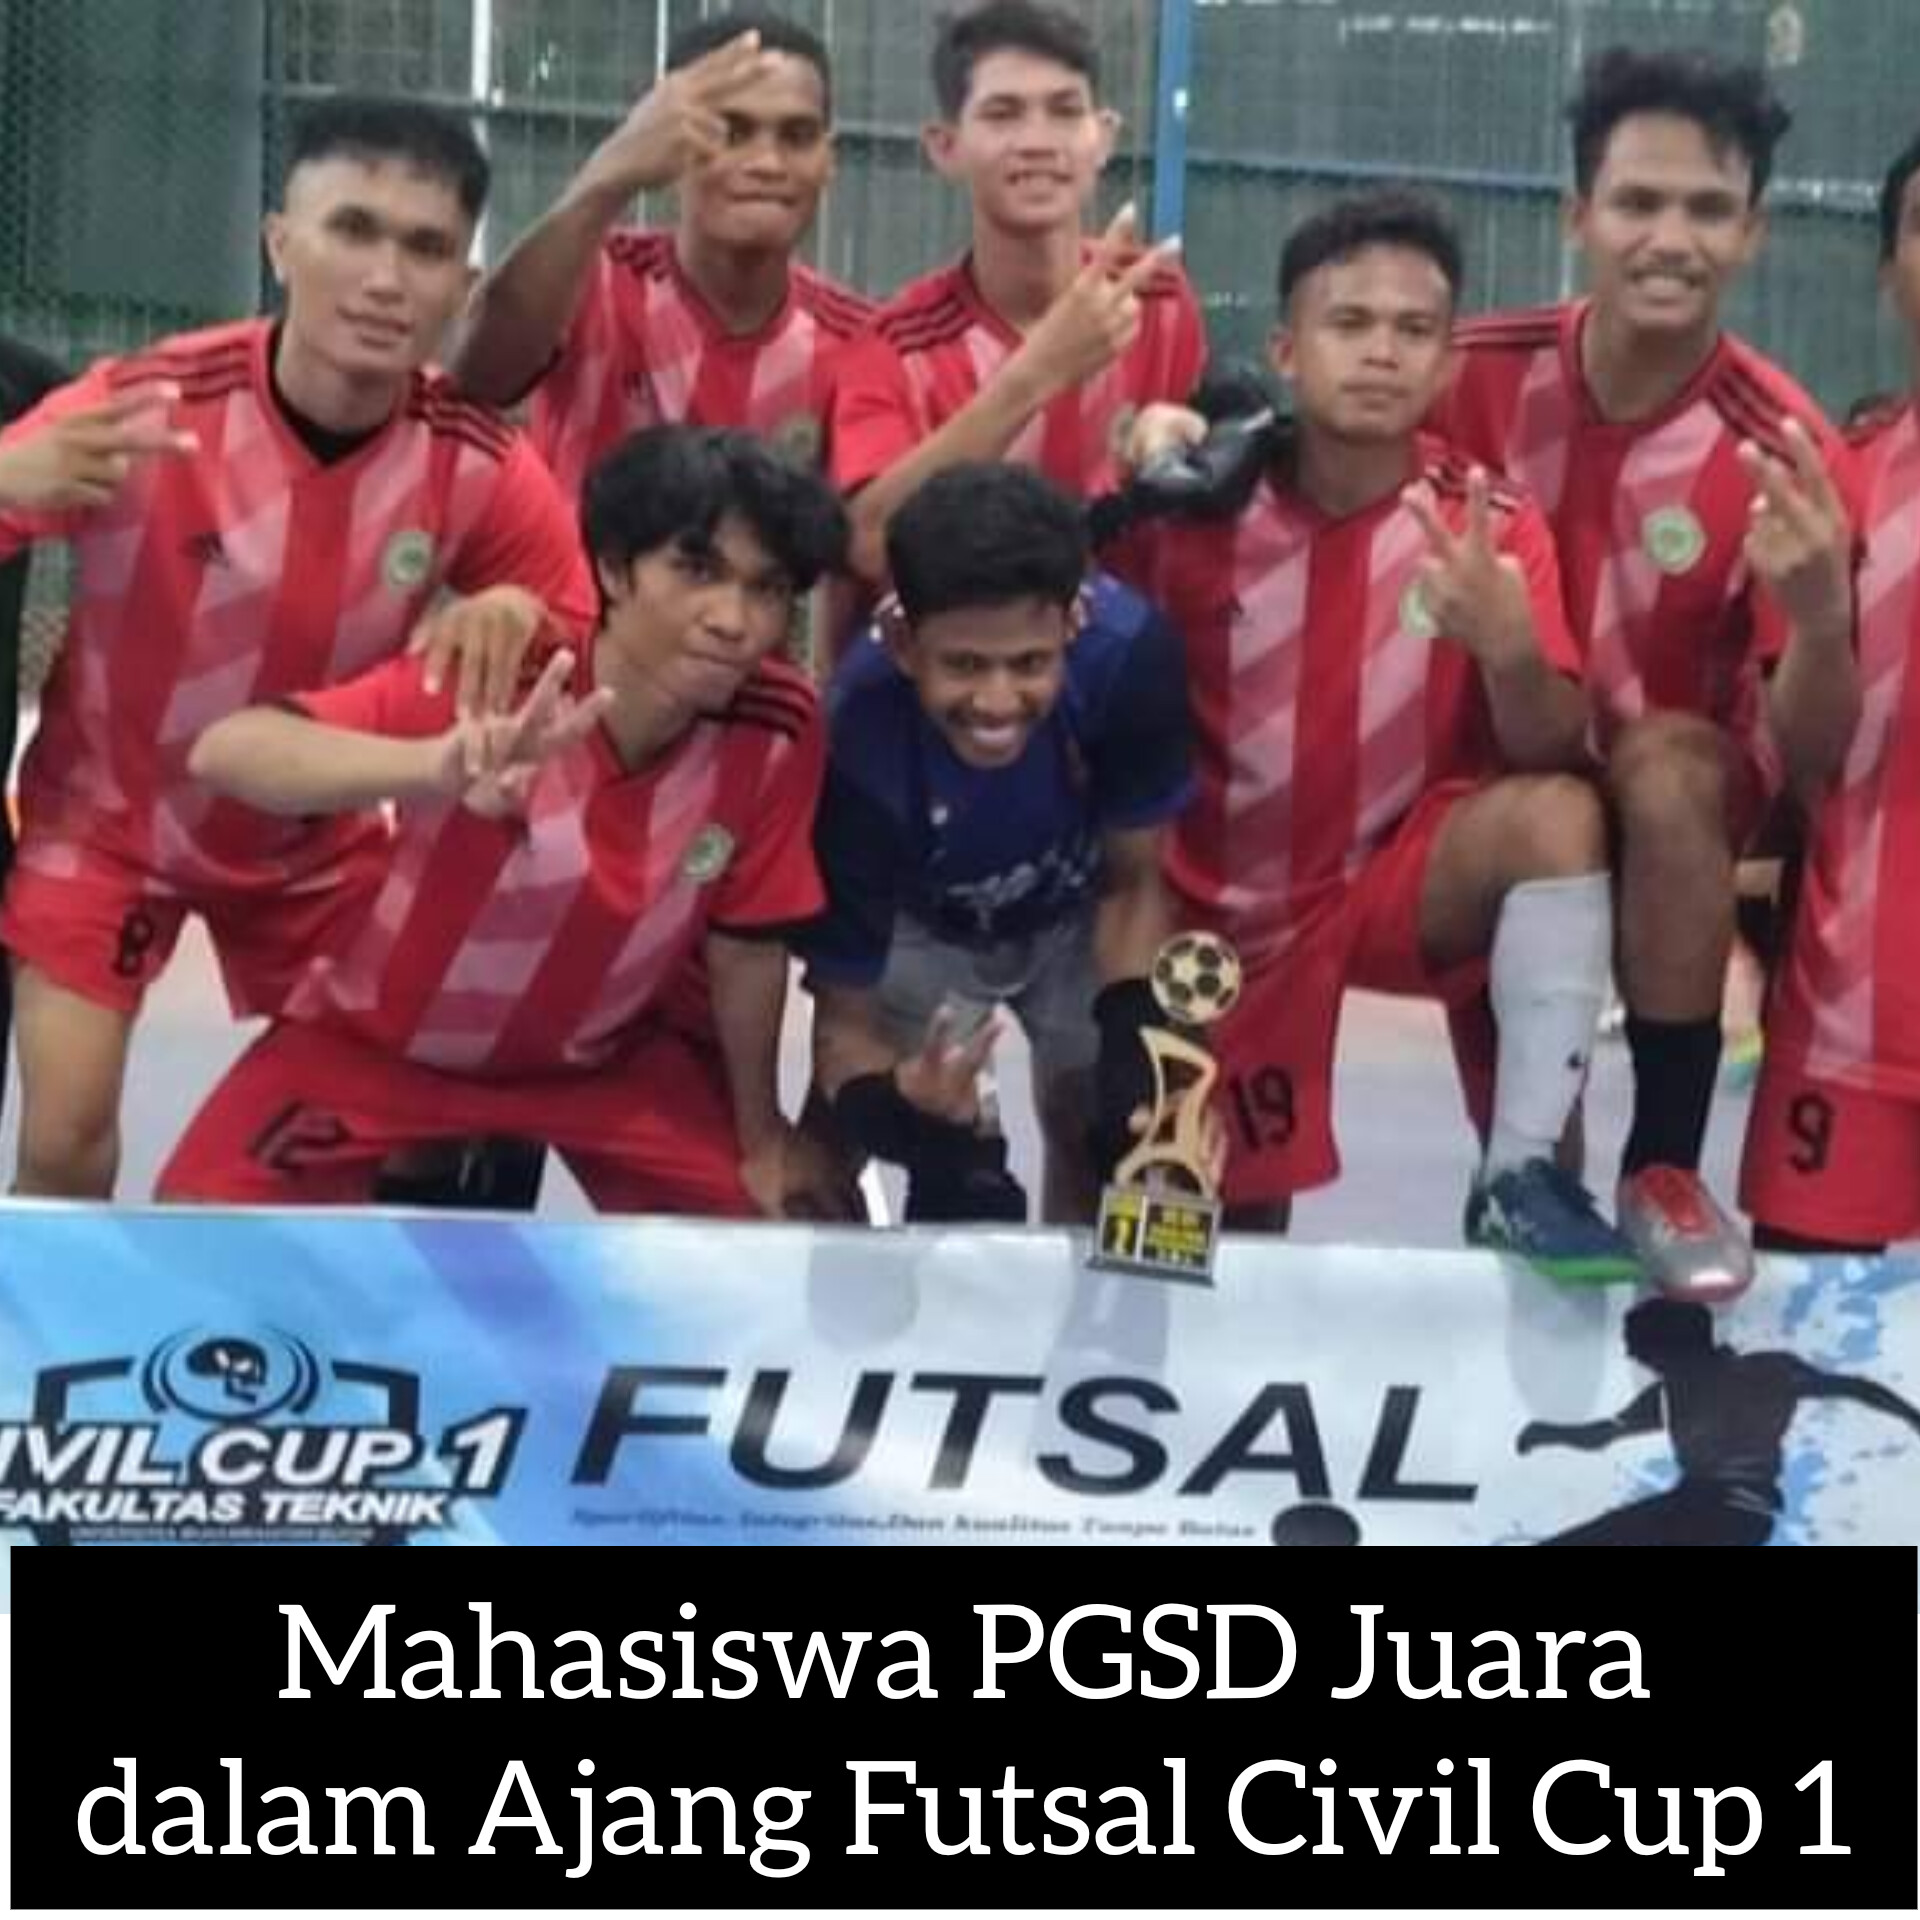 Mahasiswa PGSD Juara Futsal 